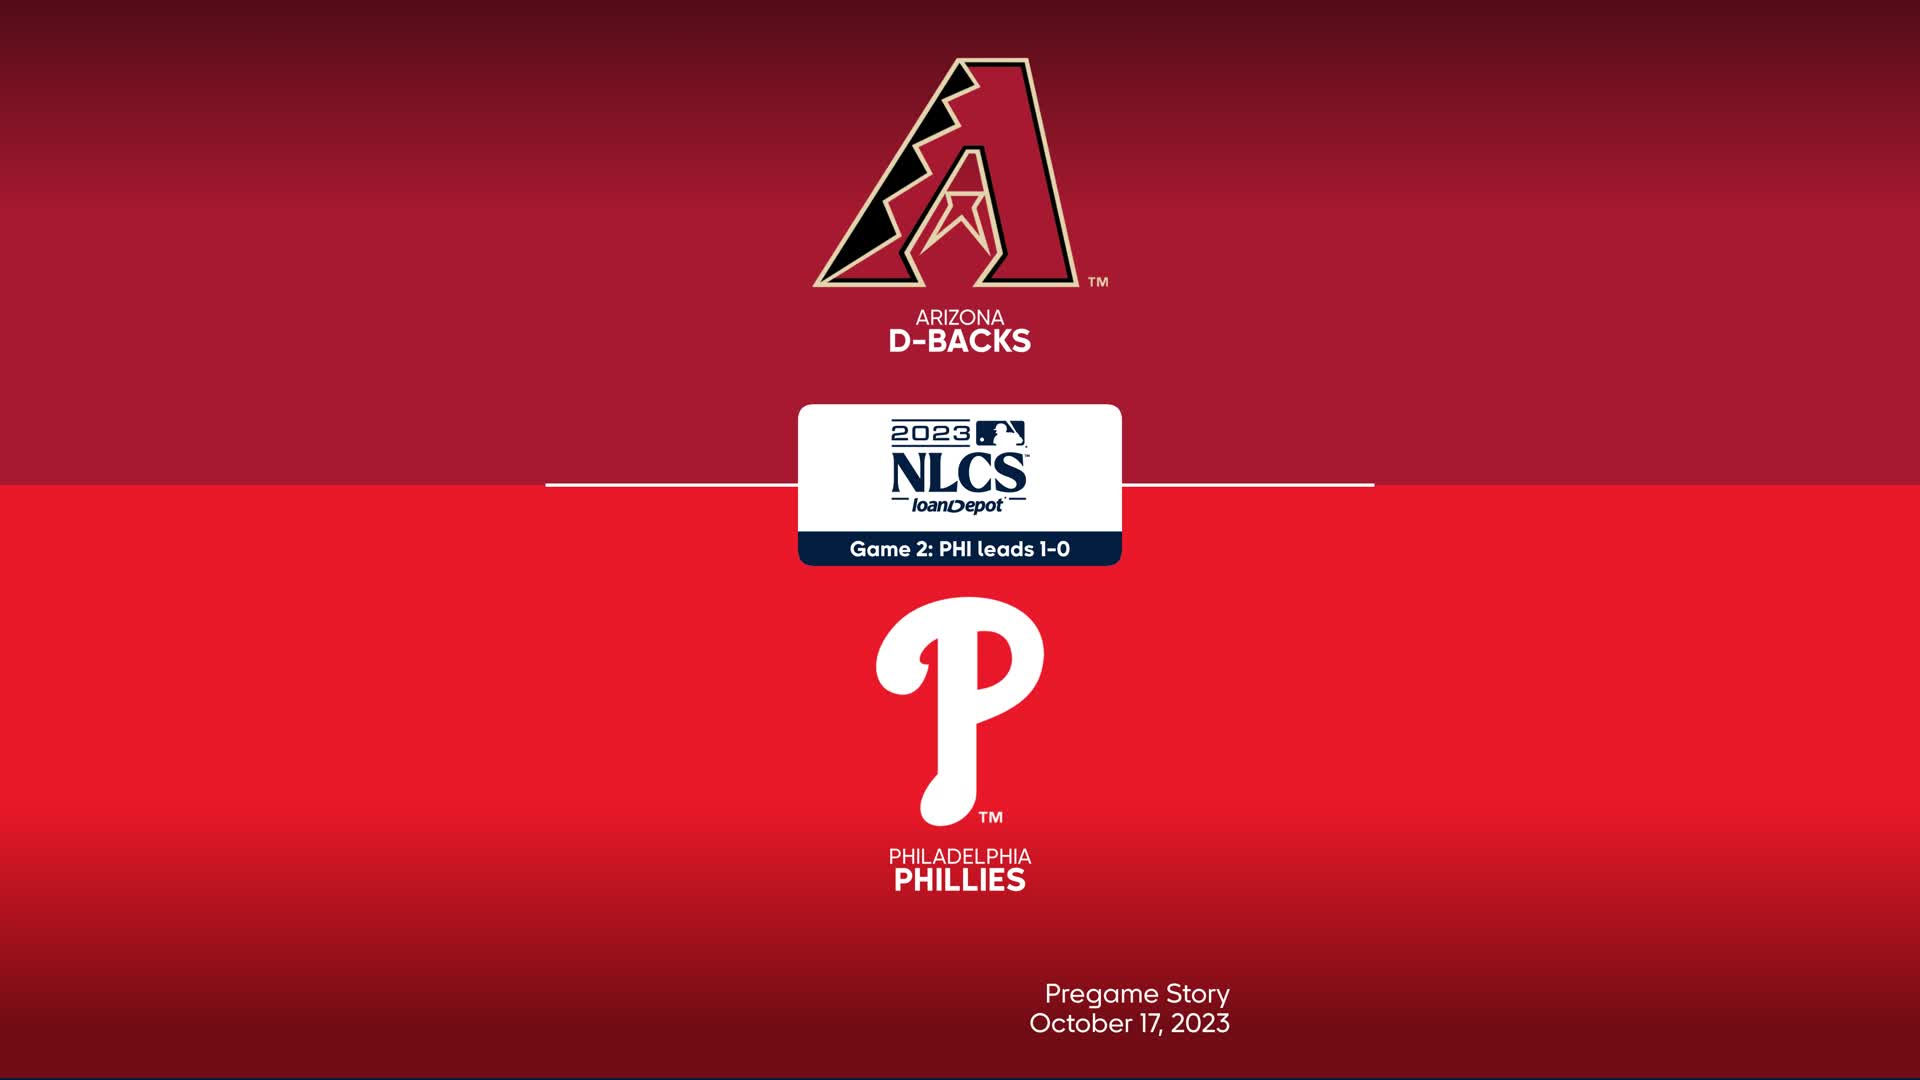 Philadelphia Phillies vs Arizona Diamondbacks 2023 NLCS